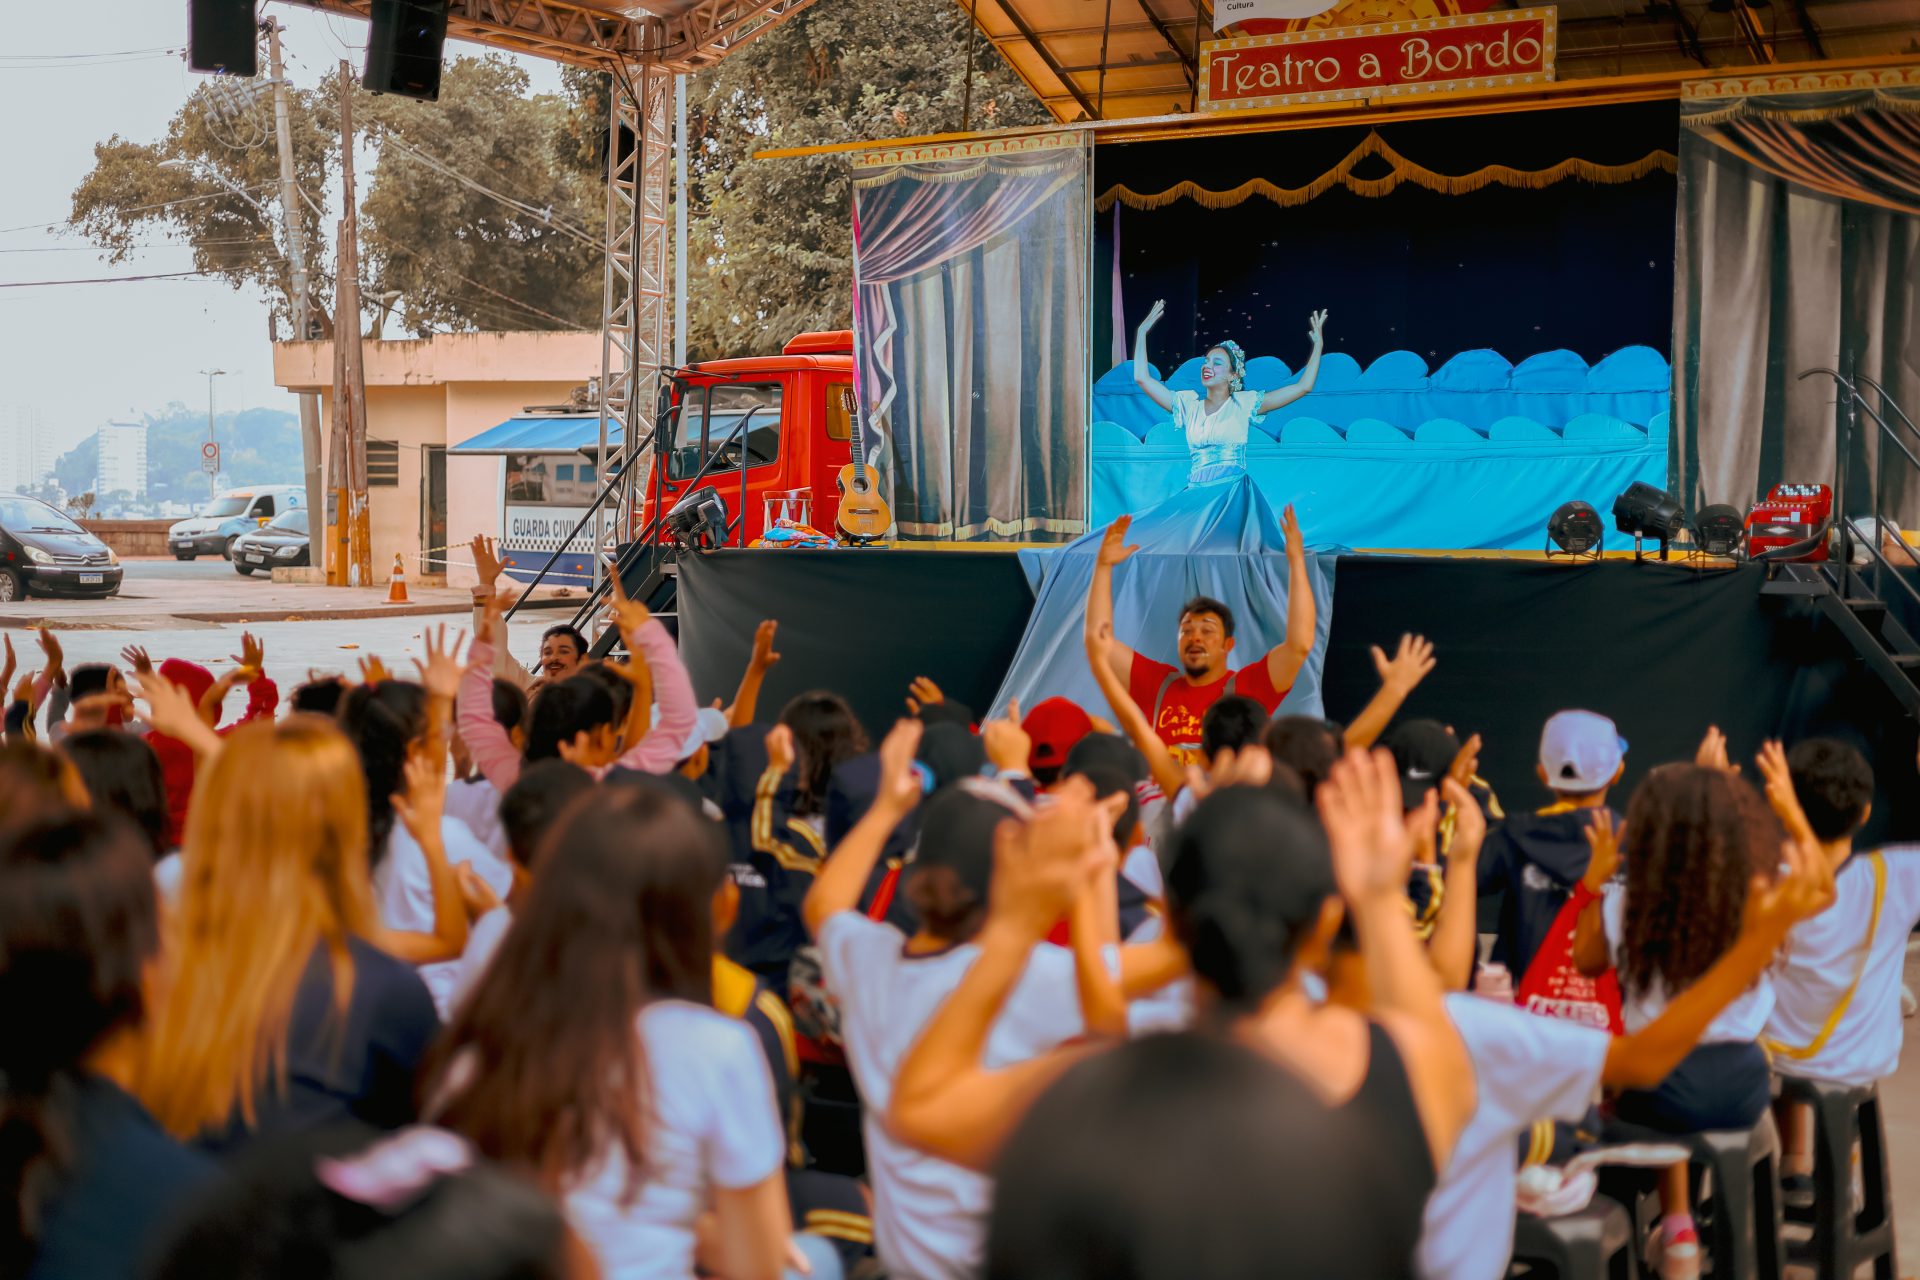 Grupo Teatro a Bordo traz alegria e cultura do brincar para Palmas com o espetáculo "Caixola Brincante"